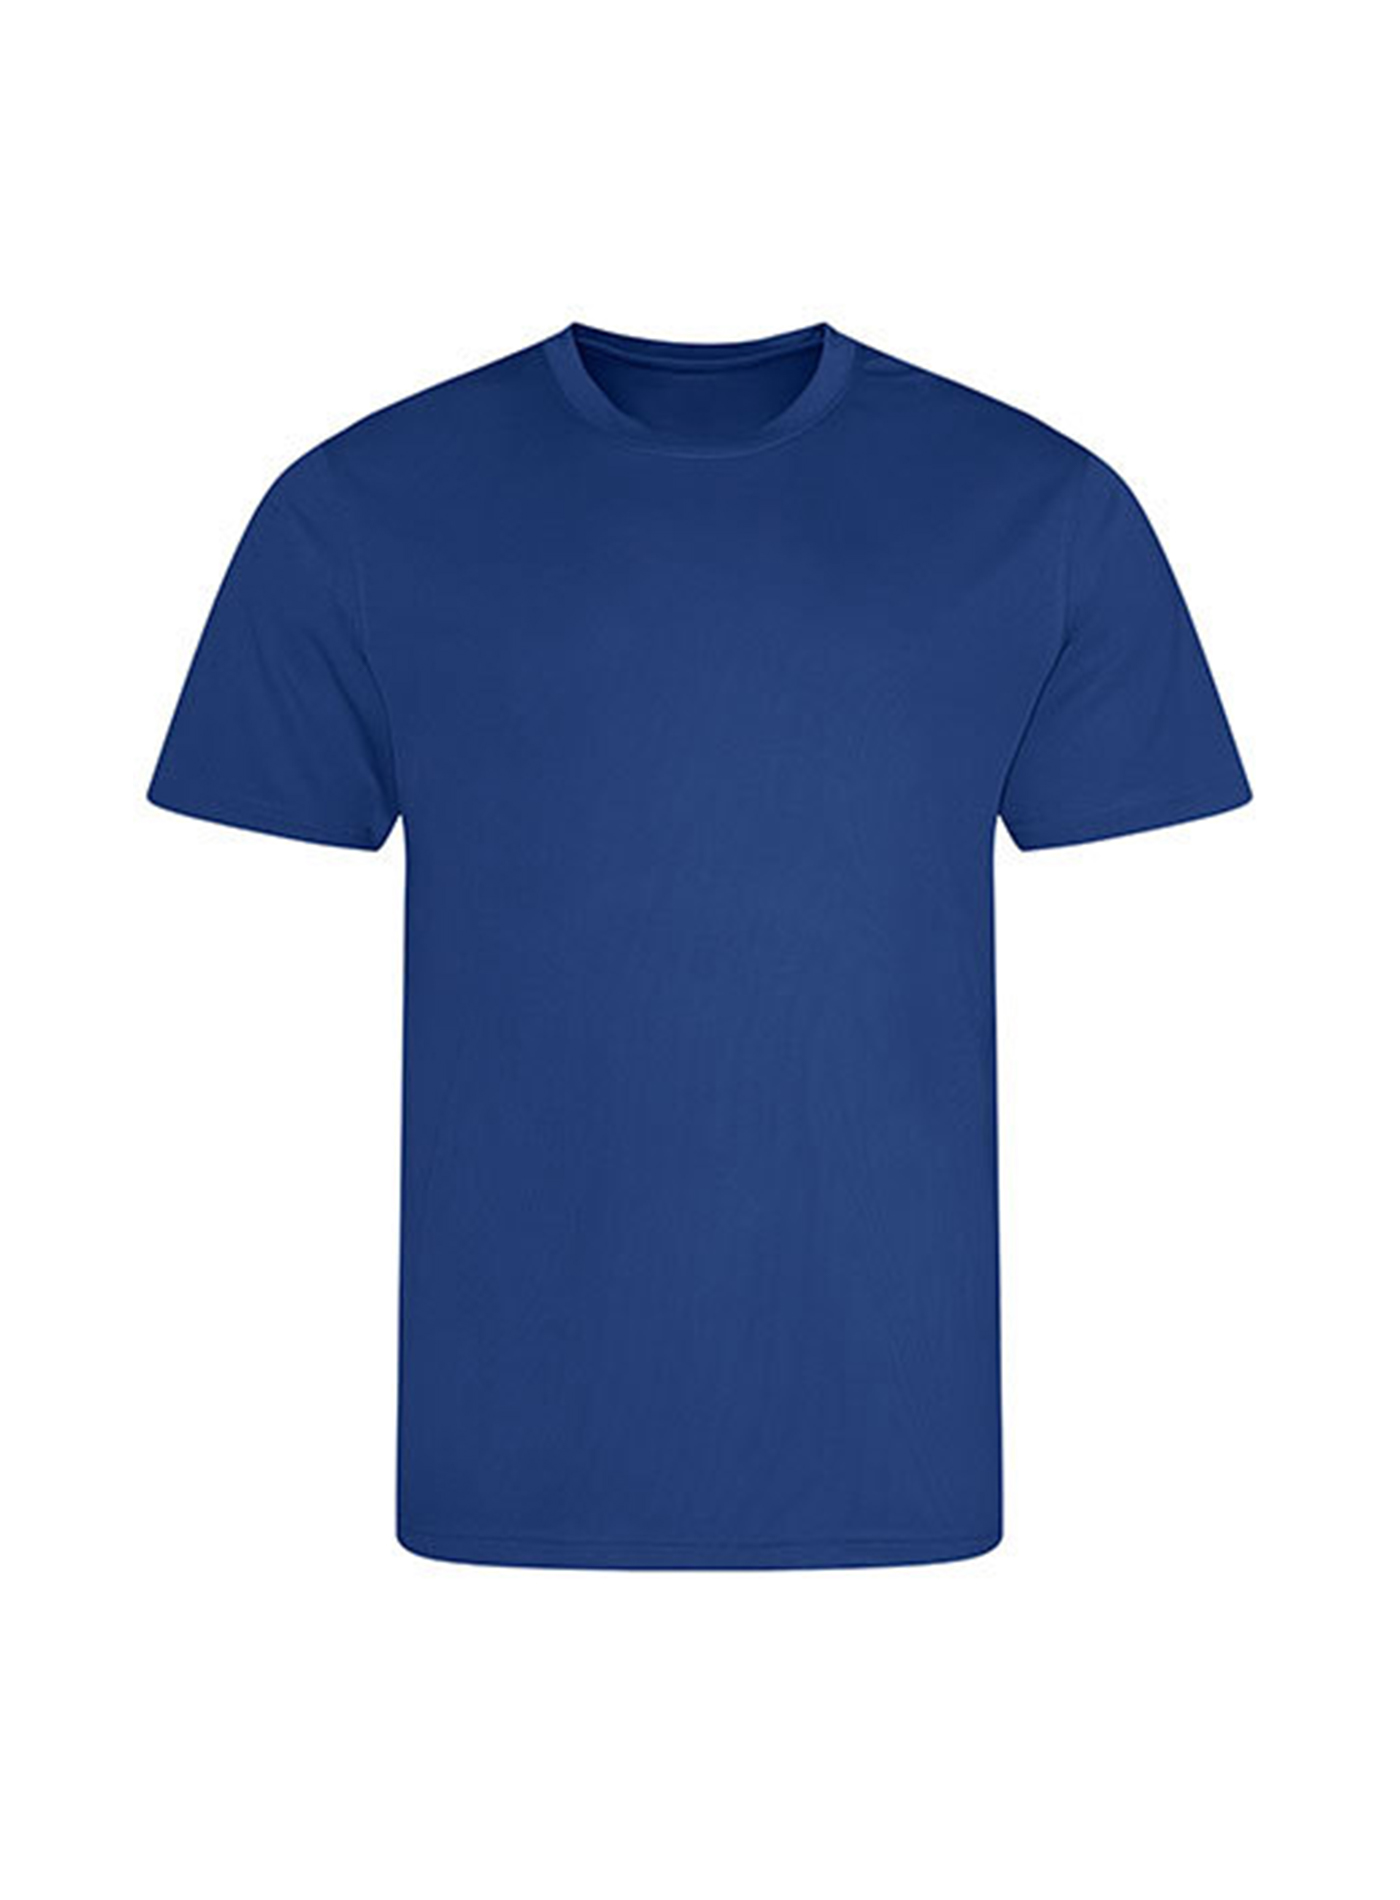 Pánské tričko Just Cool Recycled - královská modrá L